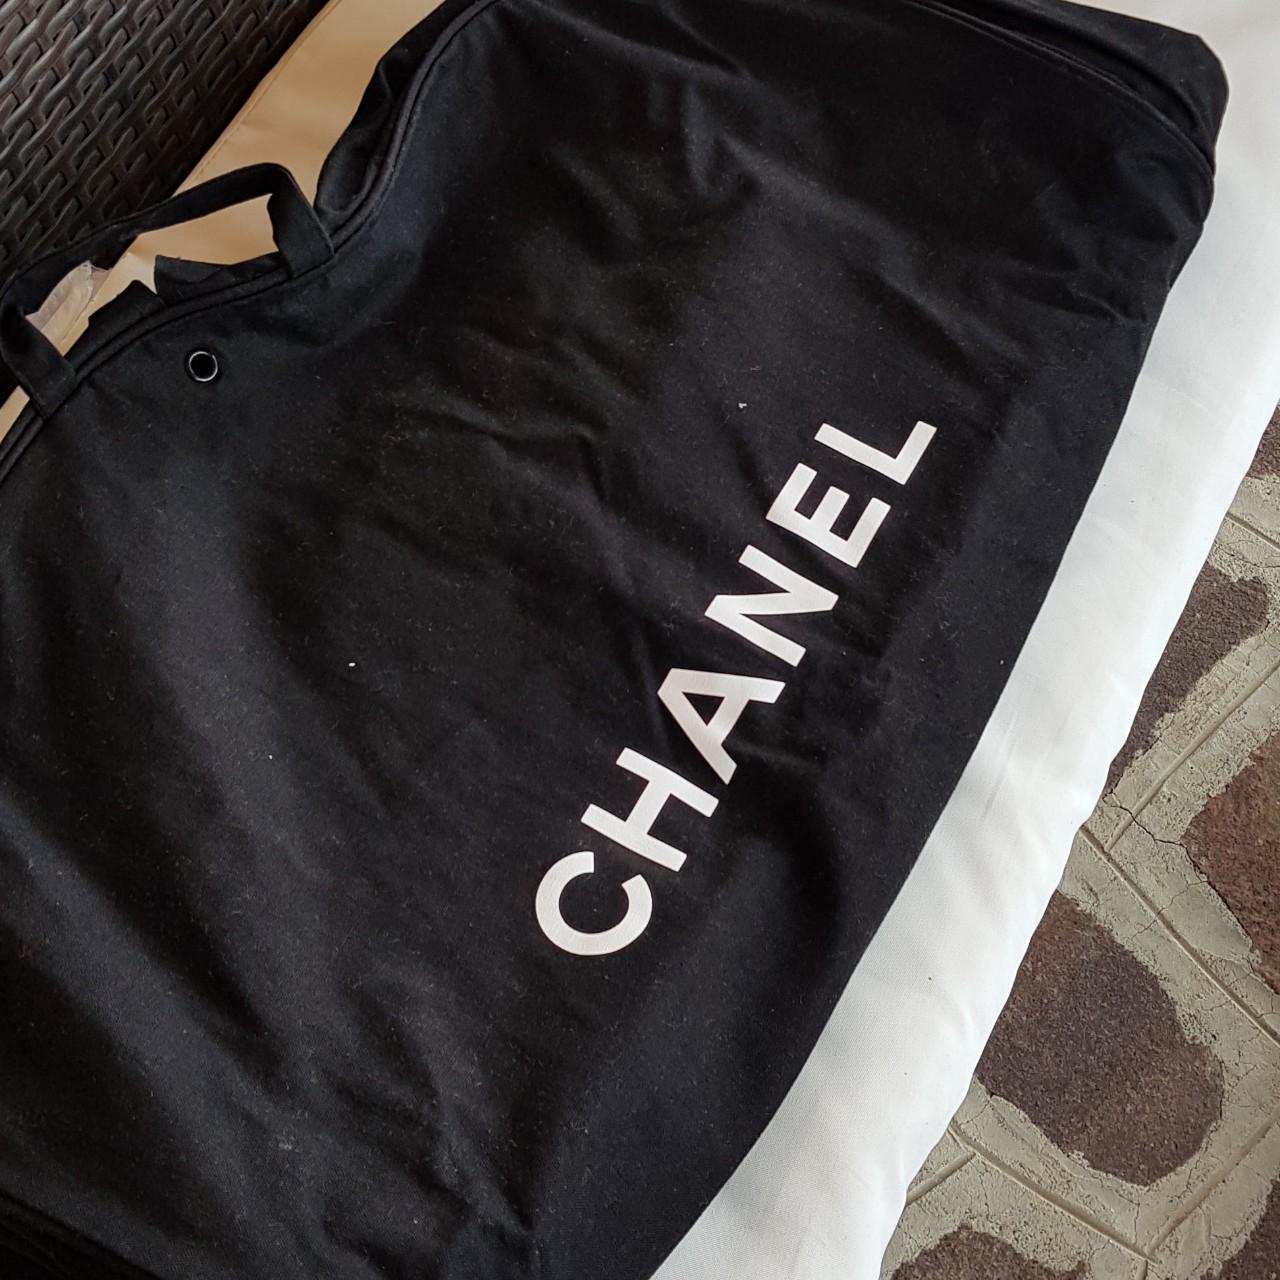 Chanel custodia borsa porta abiti . Molto capiente , - Depop